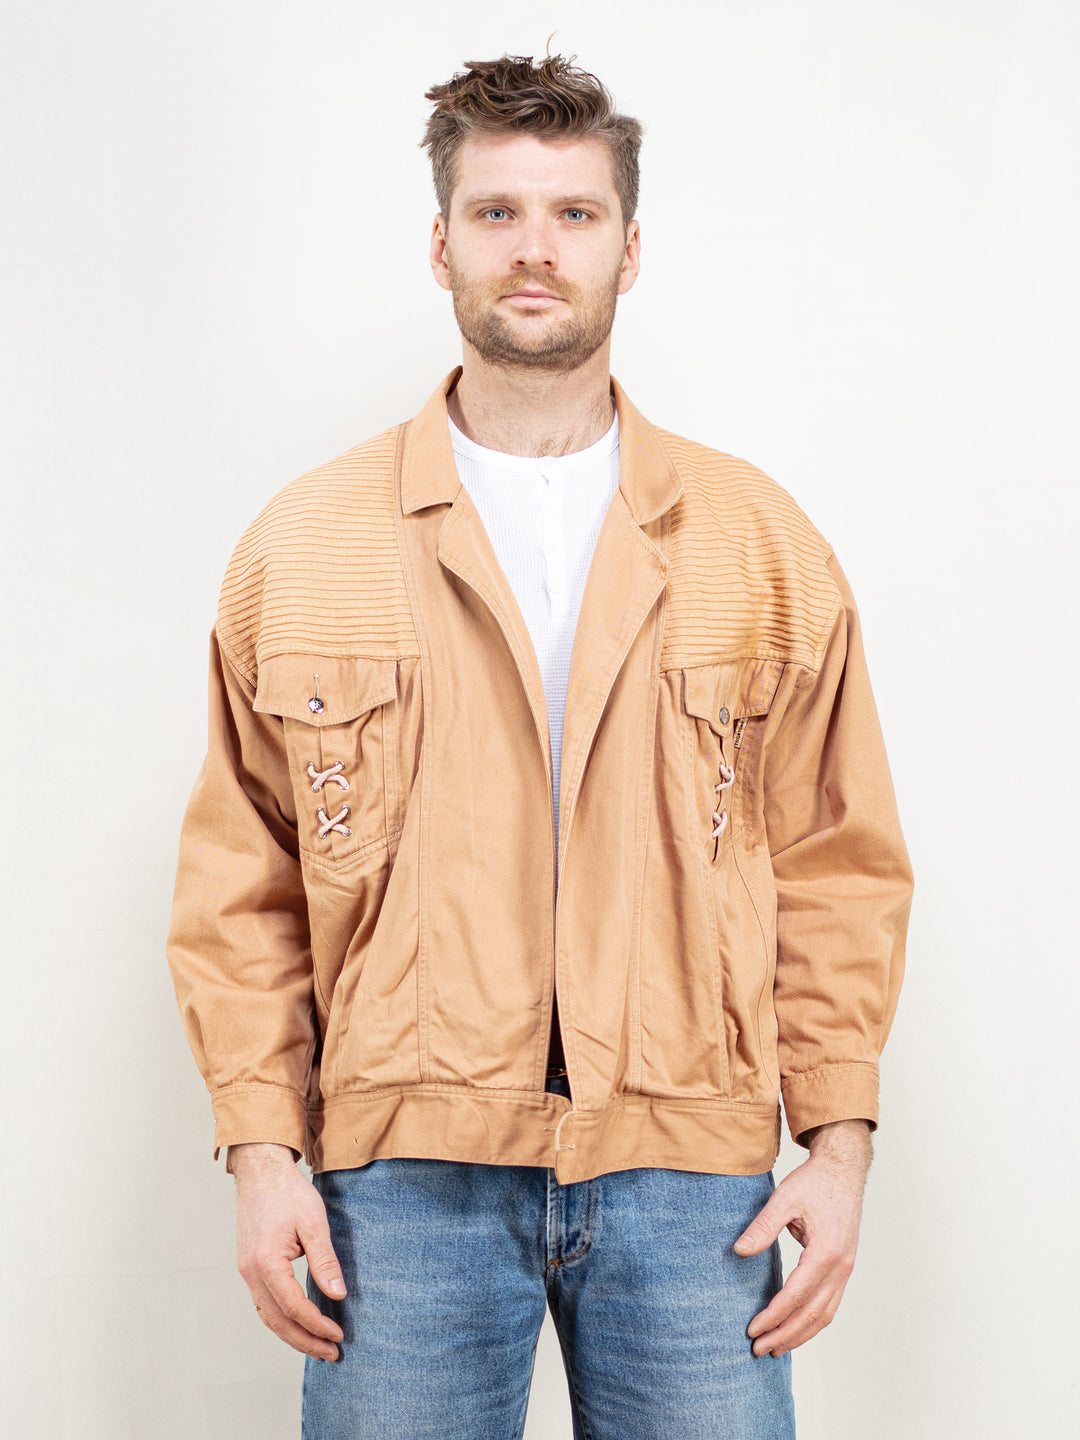 Beige Lightweight Jacket vintage 90s spring jacket jacket open front unisex casual jacket 90s clothing men jacket retro size large